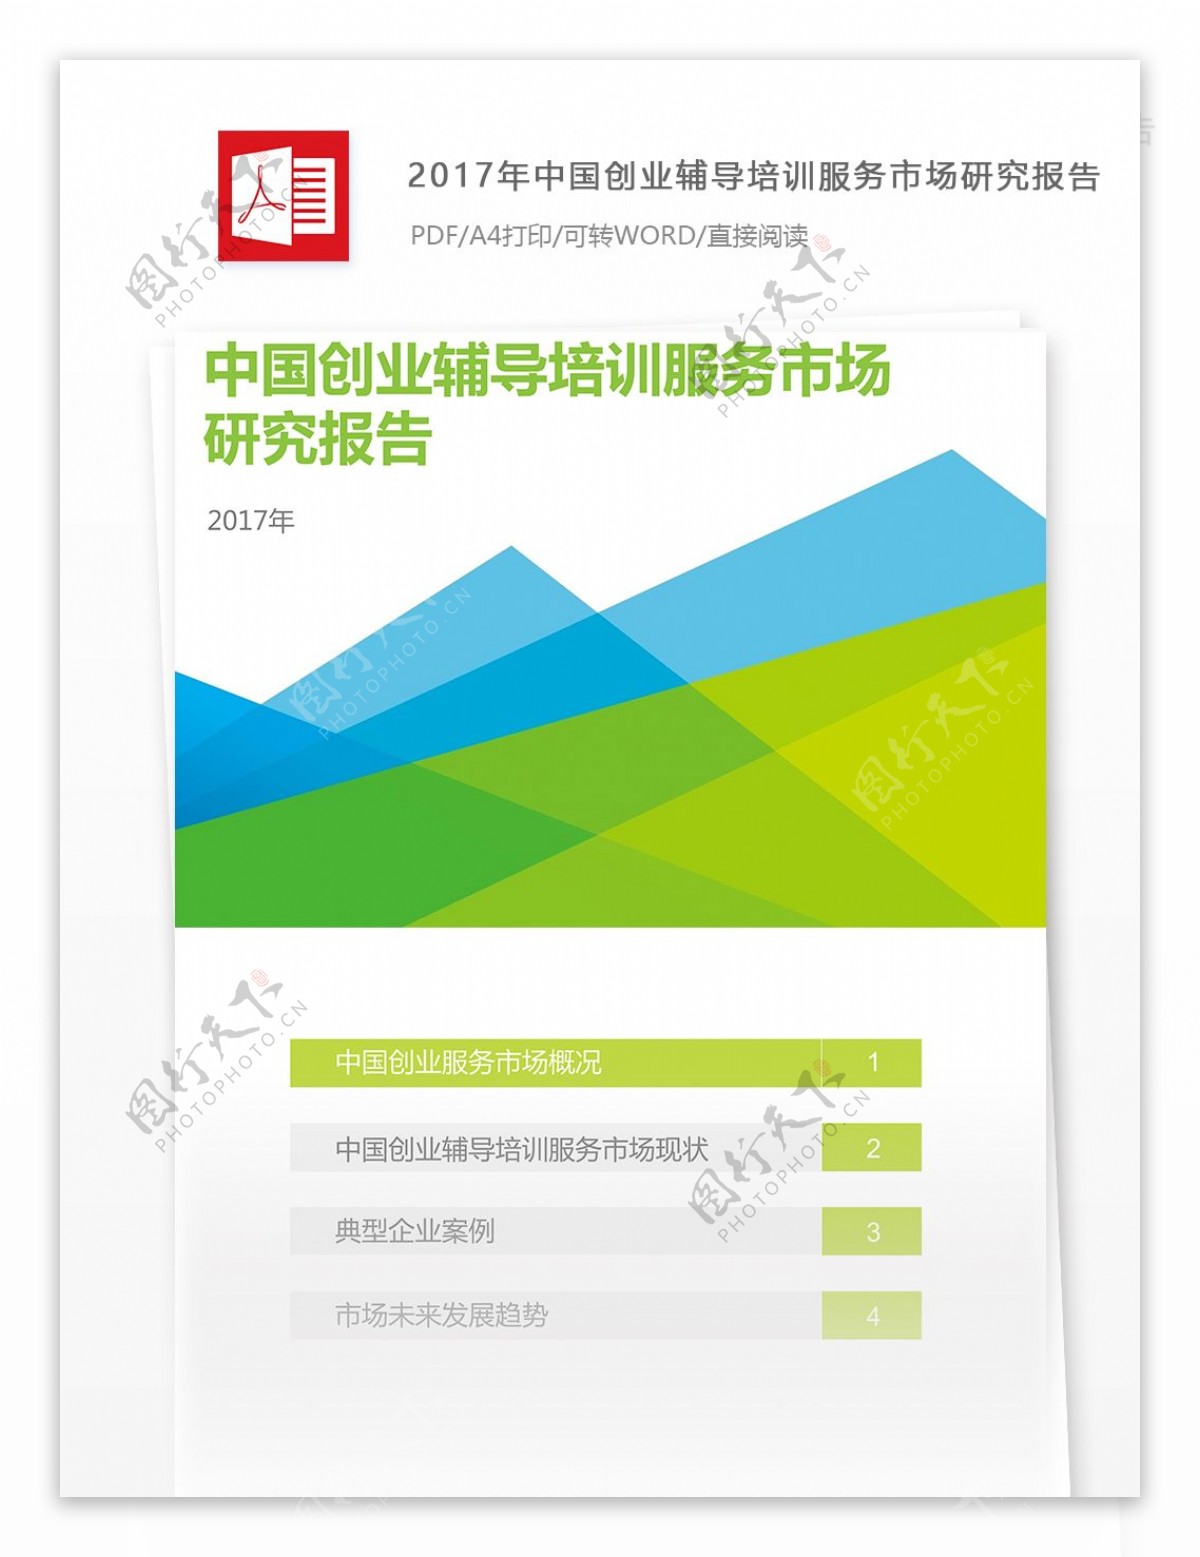 中国创业辅导培训服务市场研究分析报告800字实例